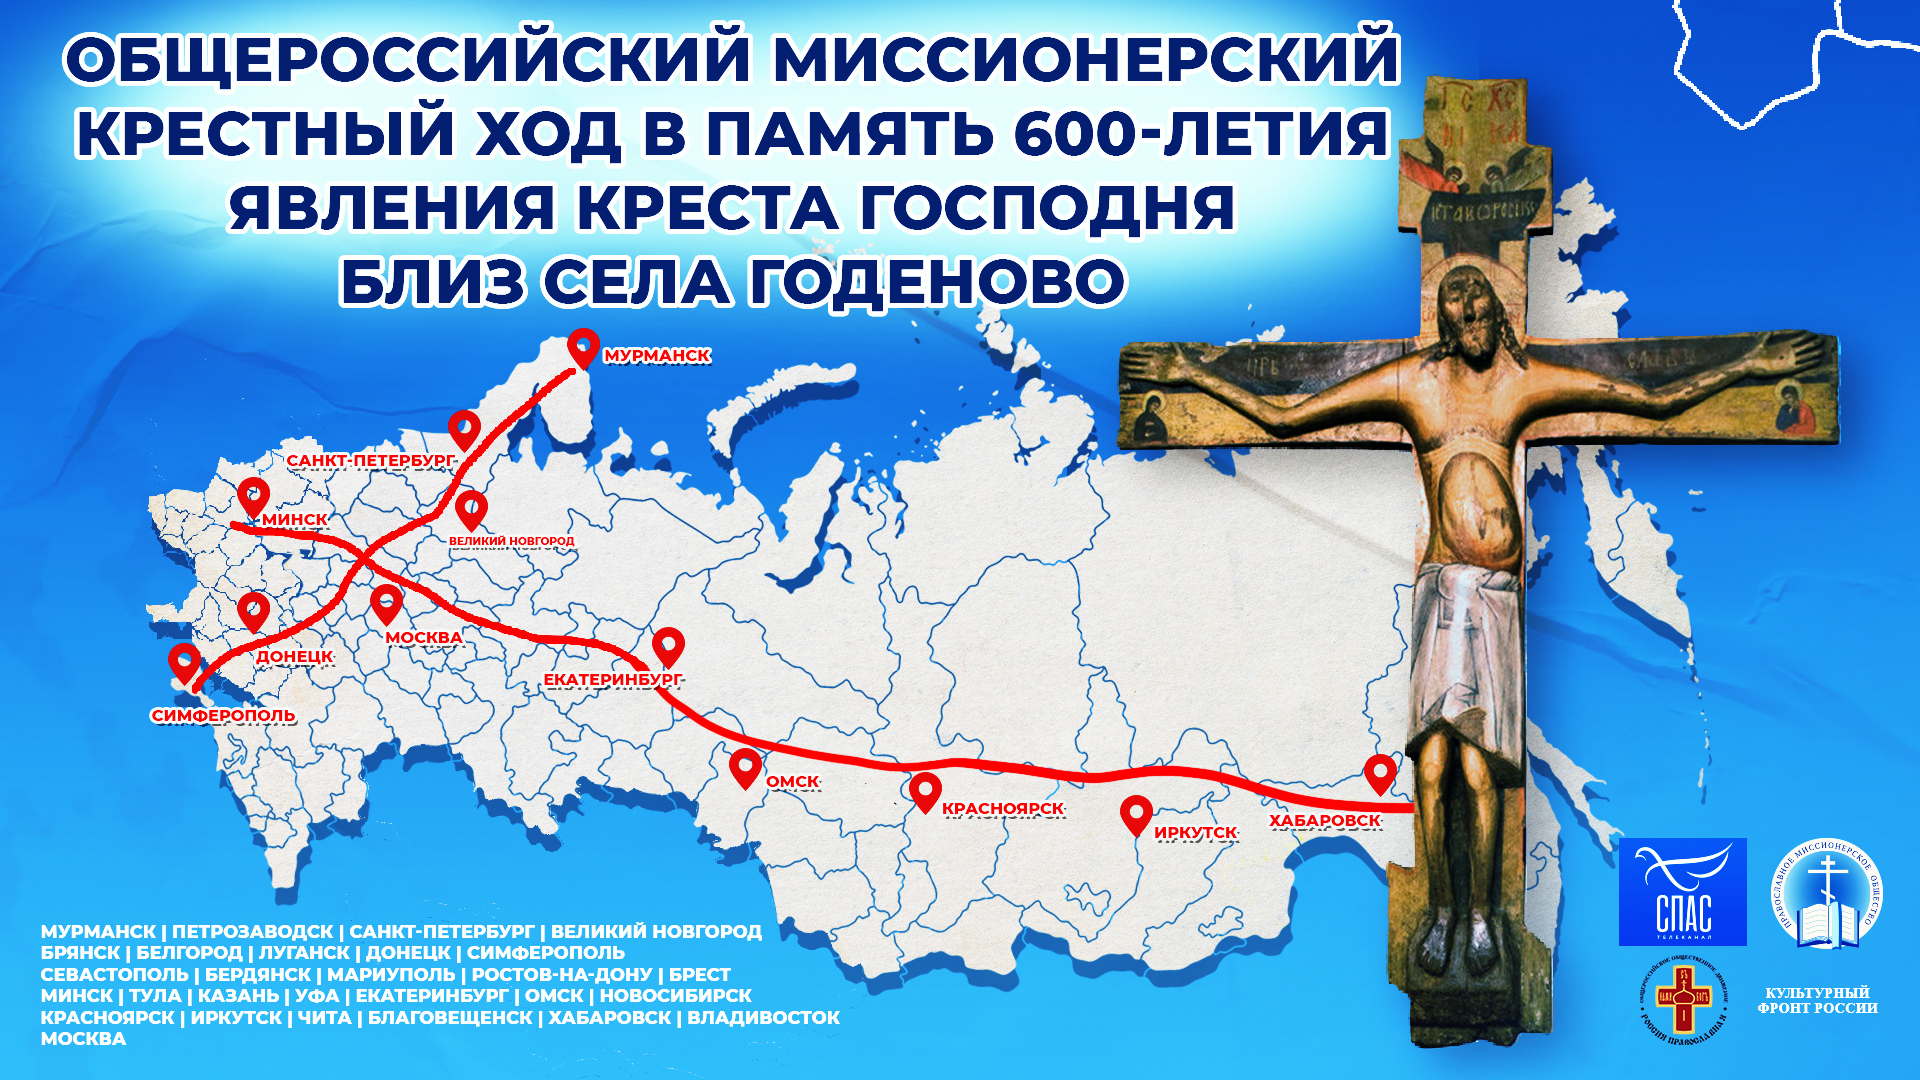 Купить кресты на могилу в Москве по доступной цене